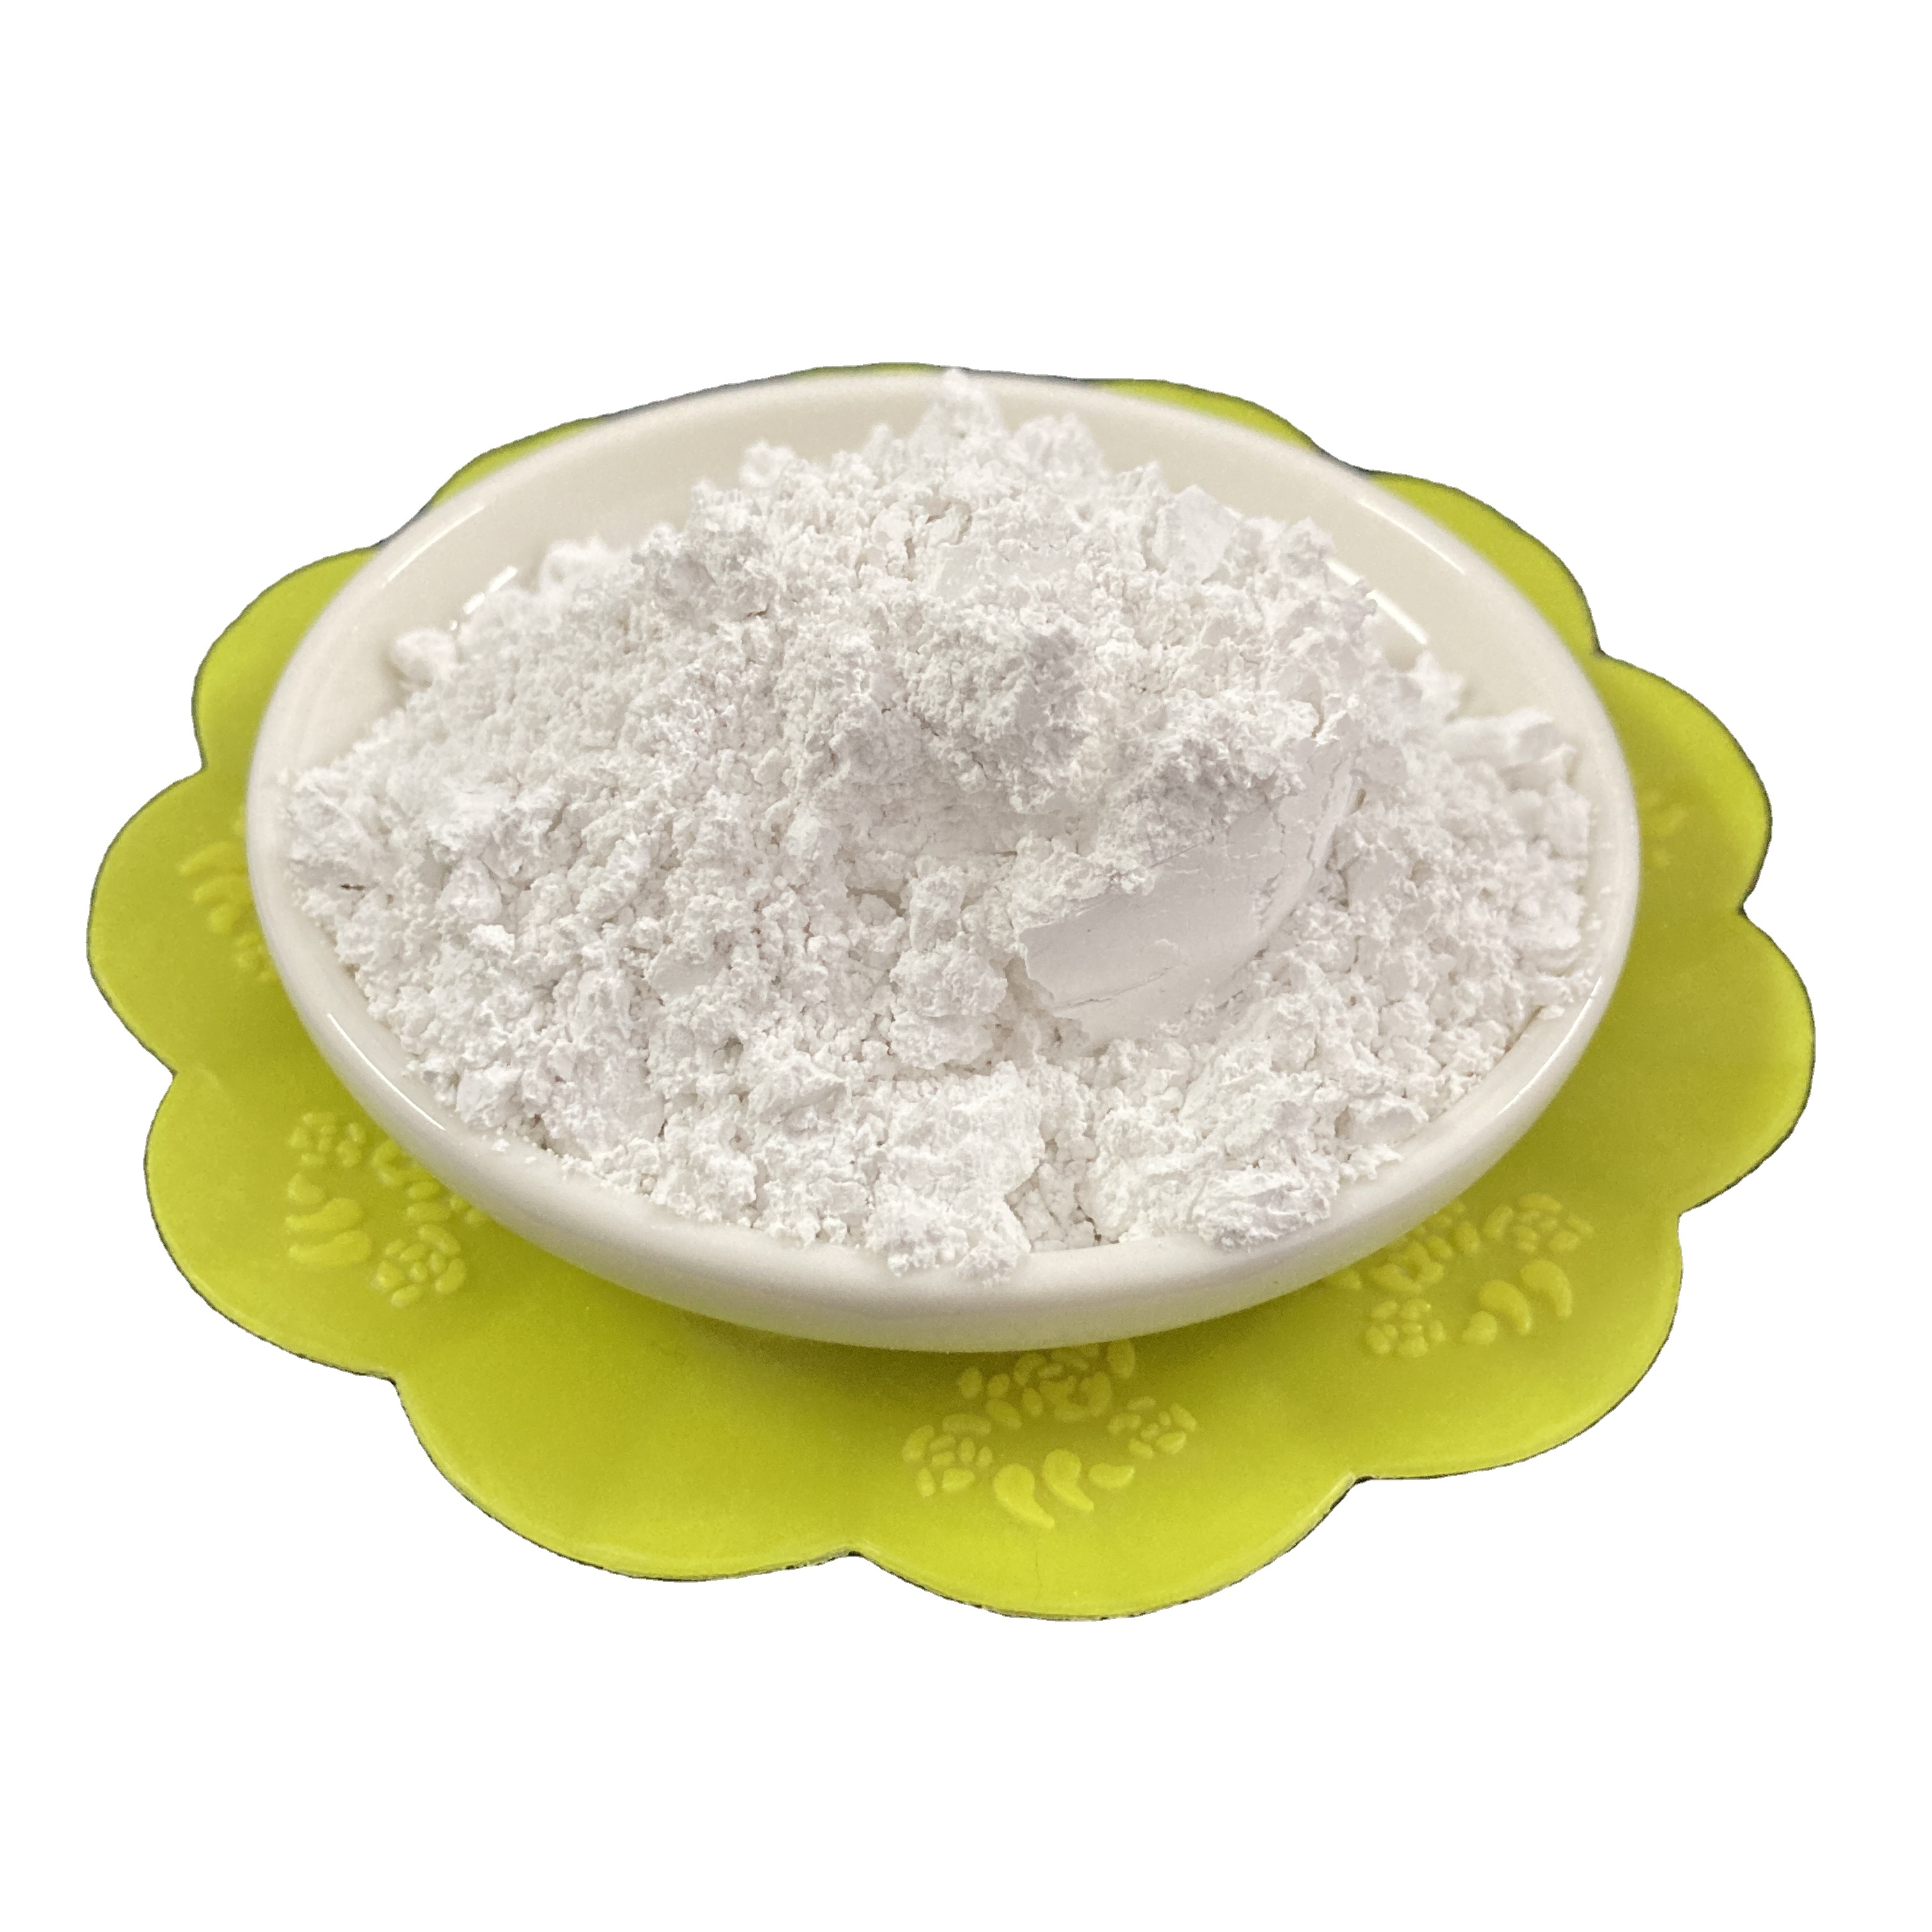 High white high purity cosmetic grade bentonite 25kg bag / bentonite clay free sample